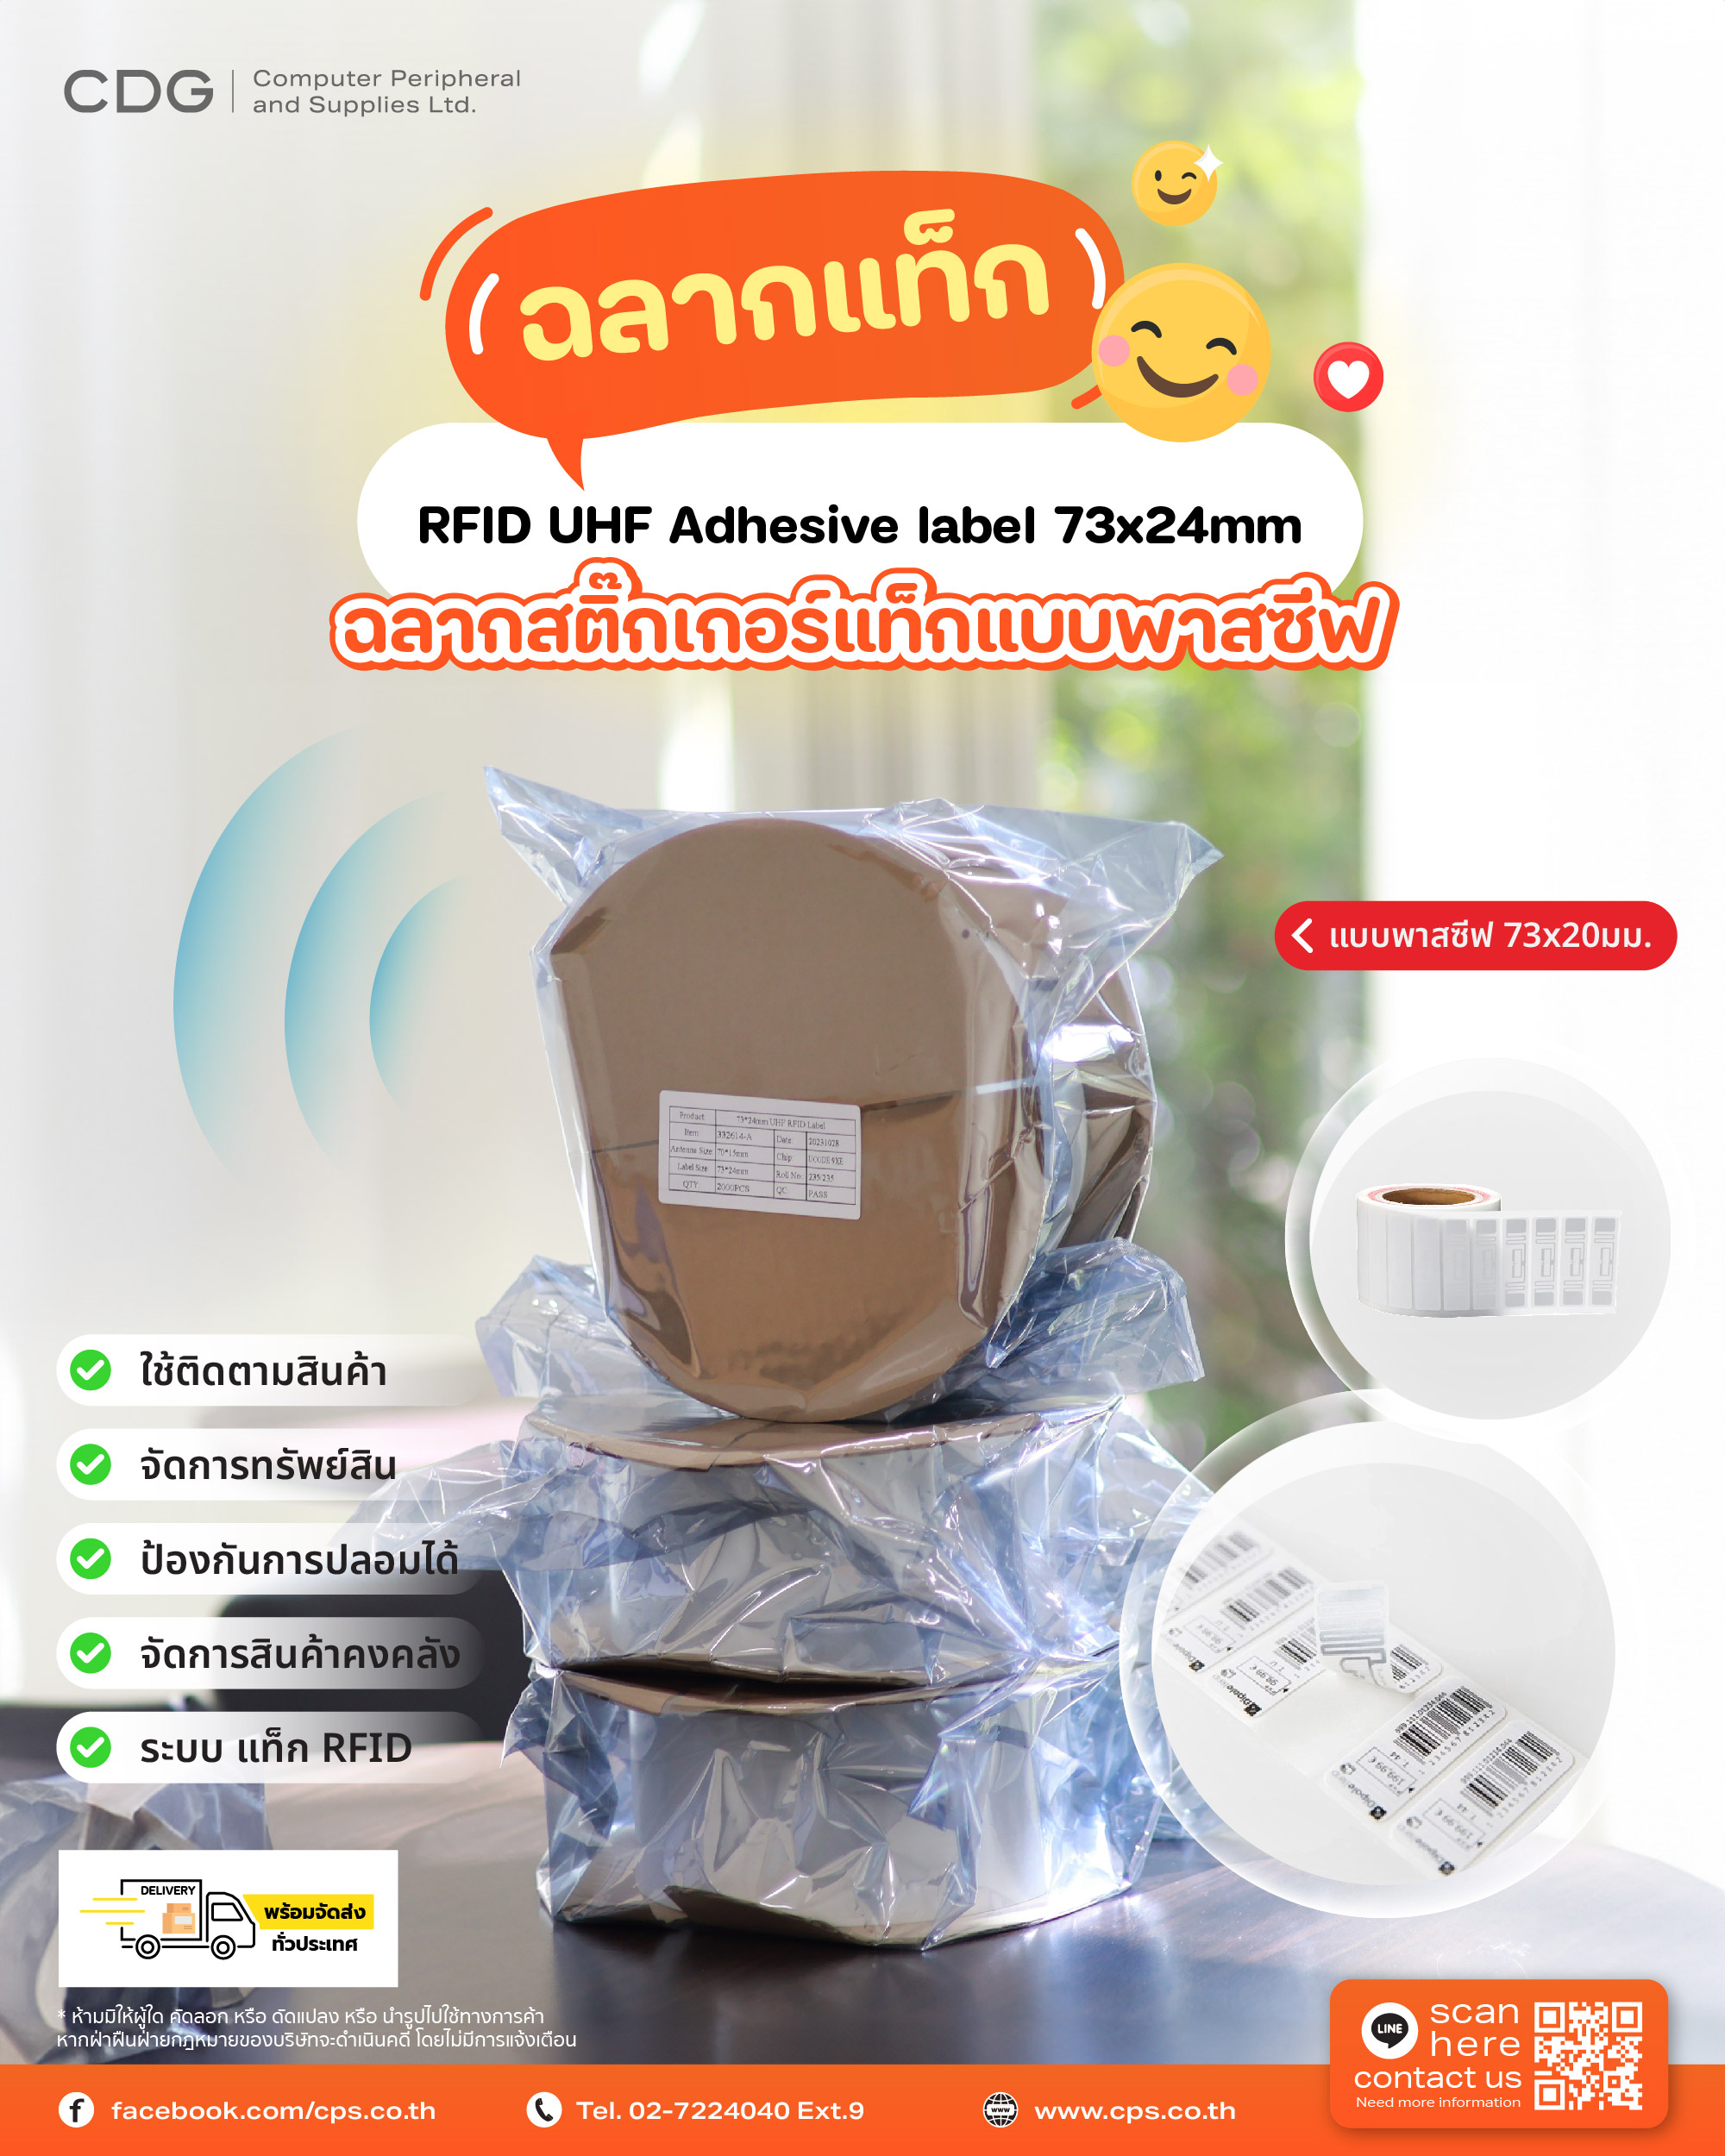 RFID UHF Tag Label Adhesive 73x24